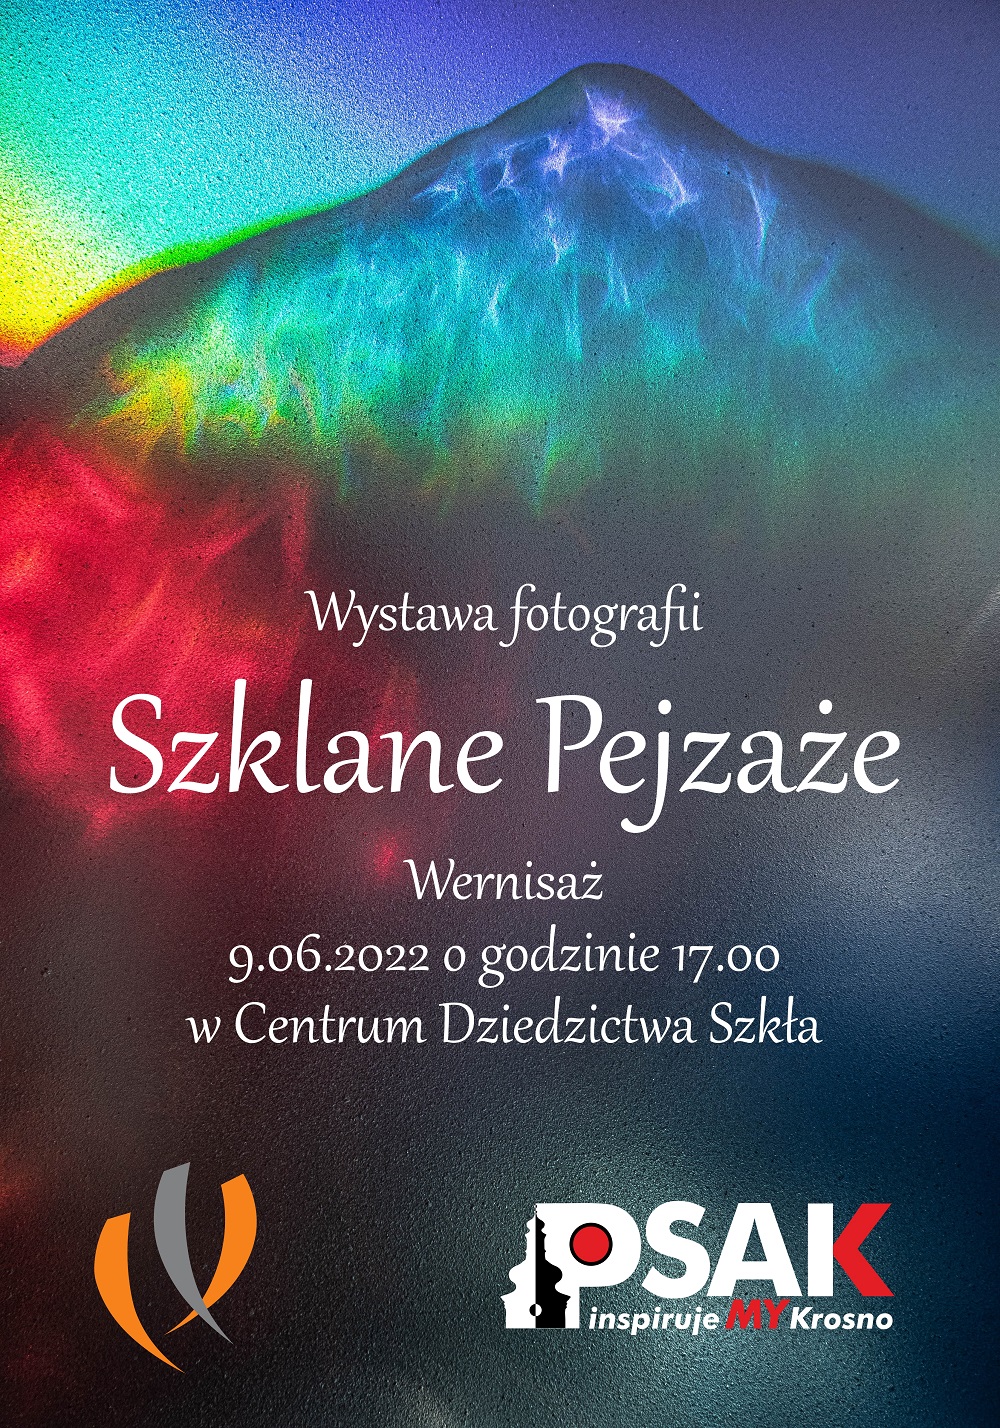 plakat informujący o wernisażu wystawy fotograficznej Szklane pejzaże. 